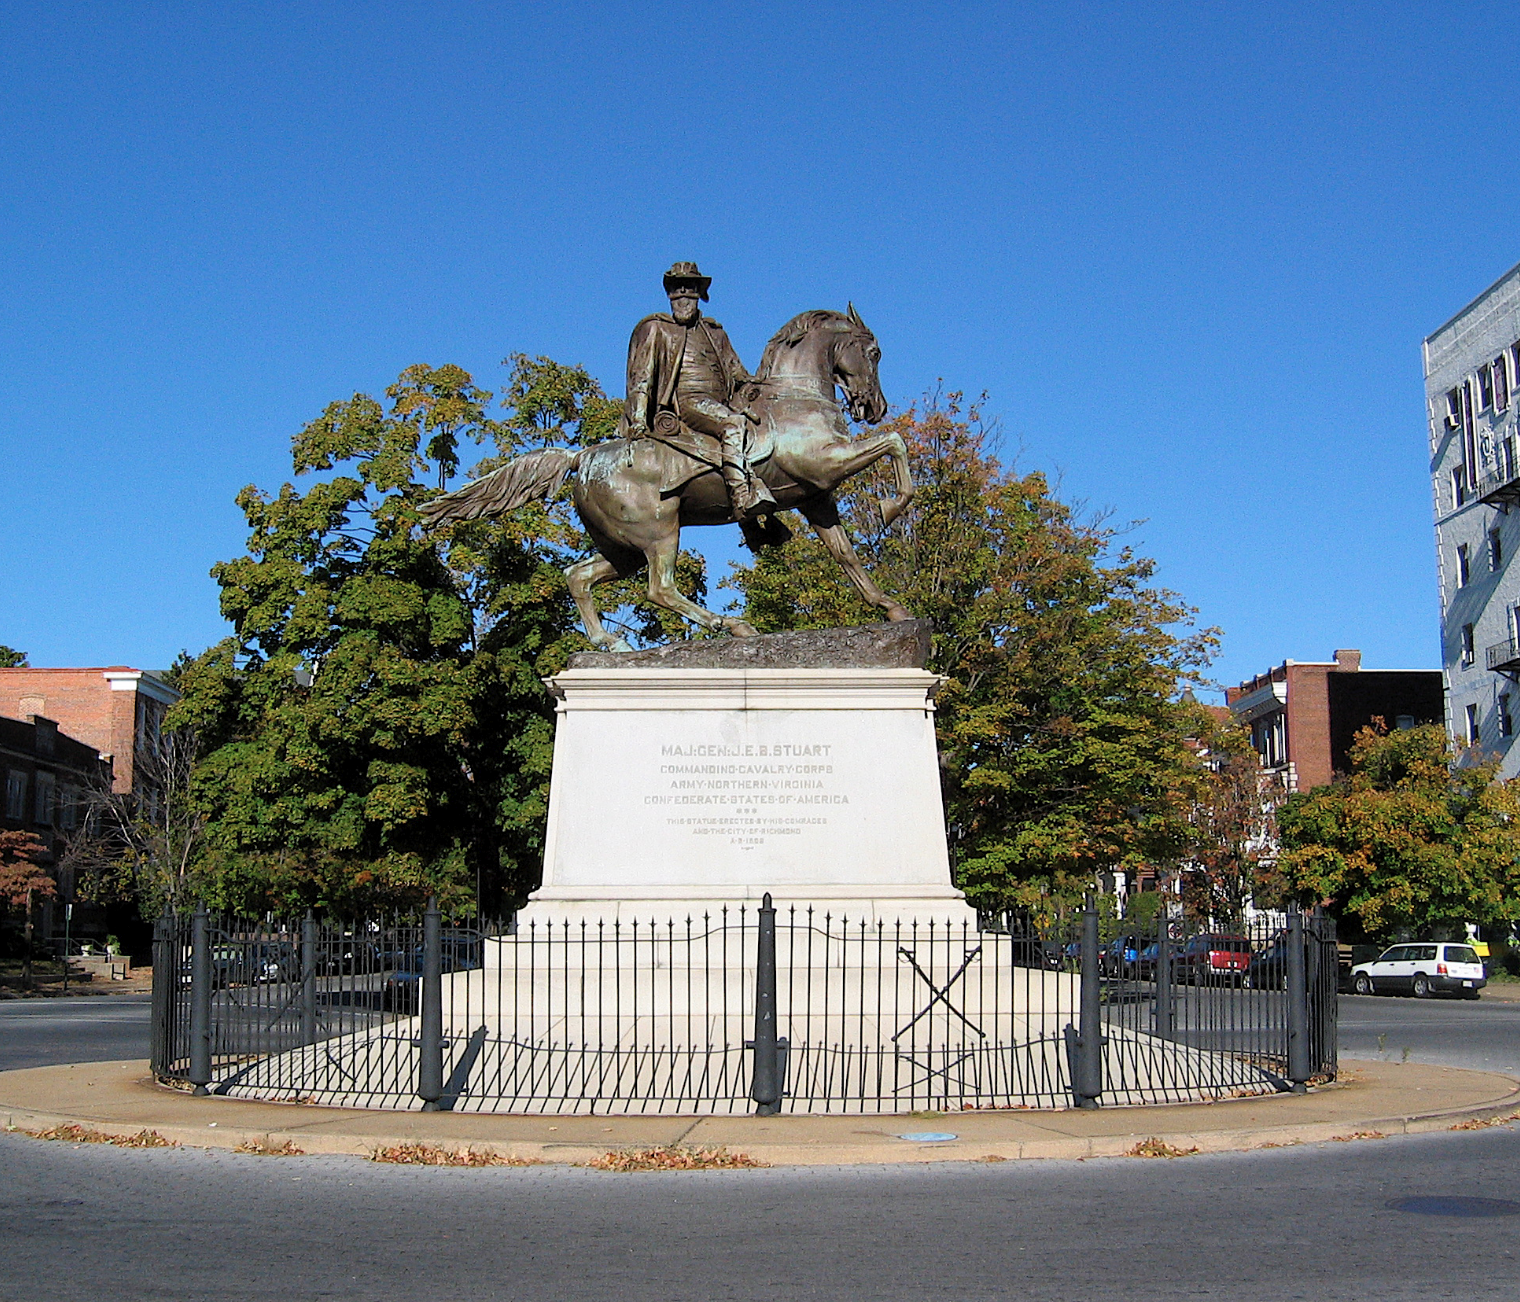 The J.E.B. Stuart statue in Richmond, Va.